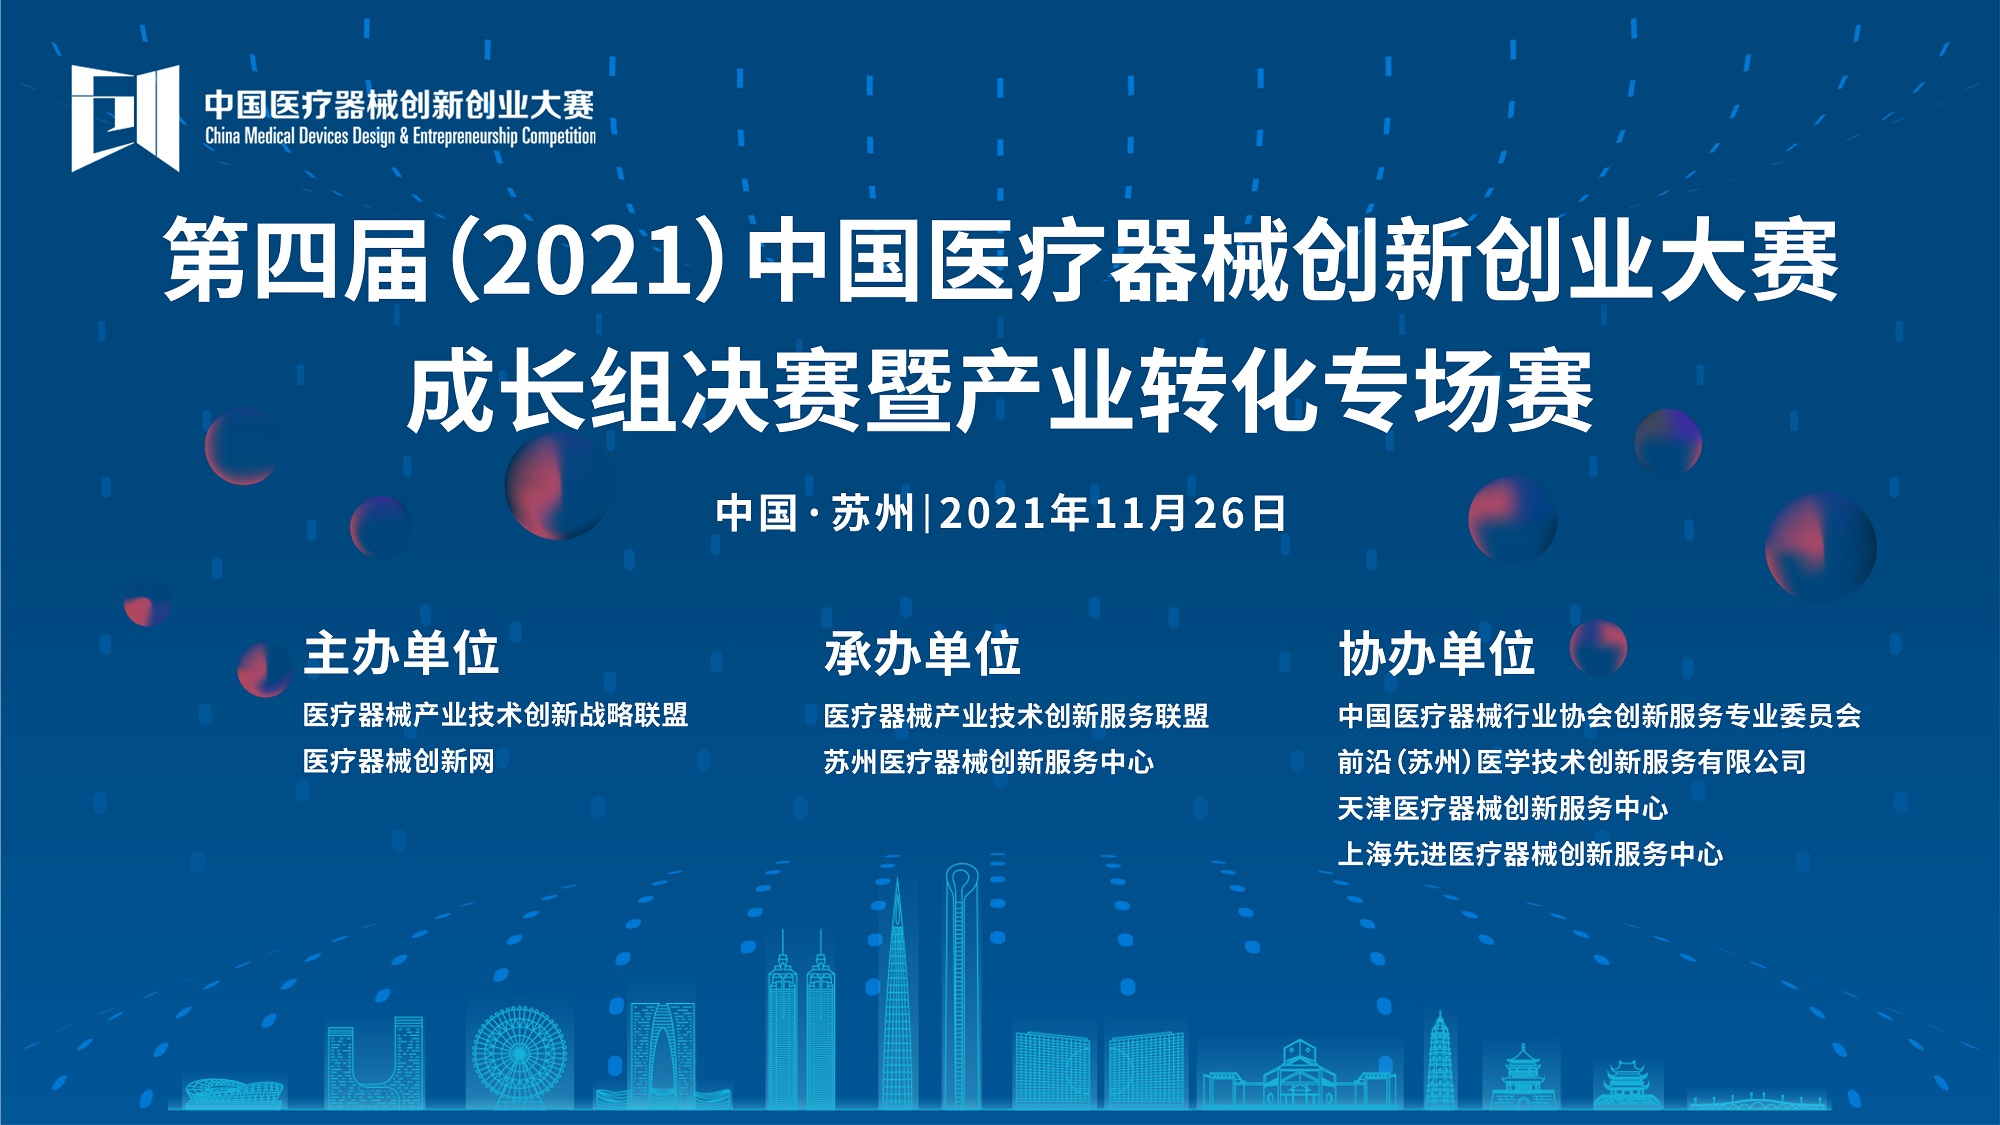 来啦！成长组决赛暨产业转化专场赛将于11月26日在苏州开战——第四届（2021）中国医疗器械创新创业大赛